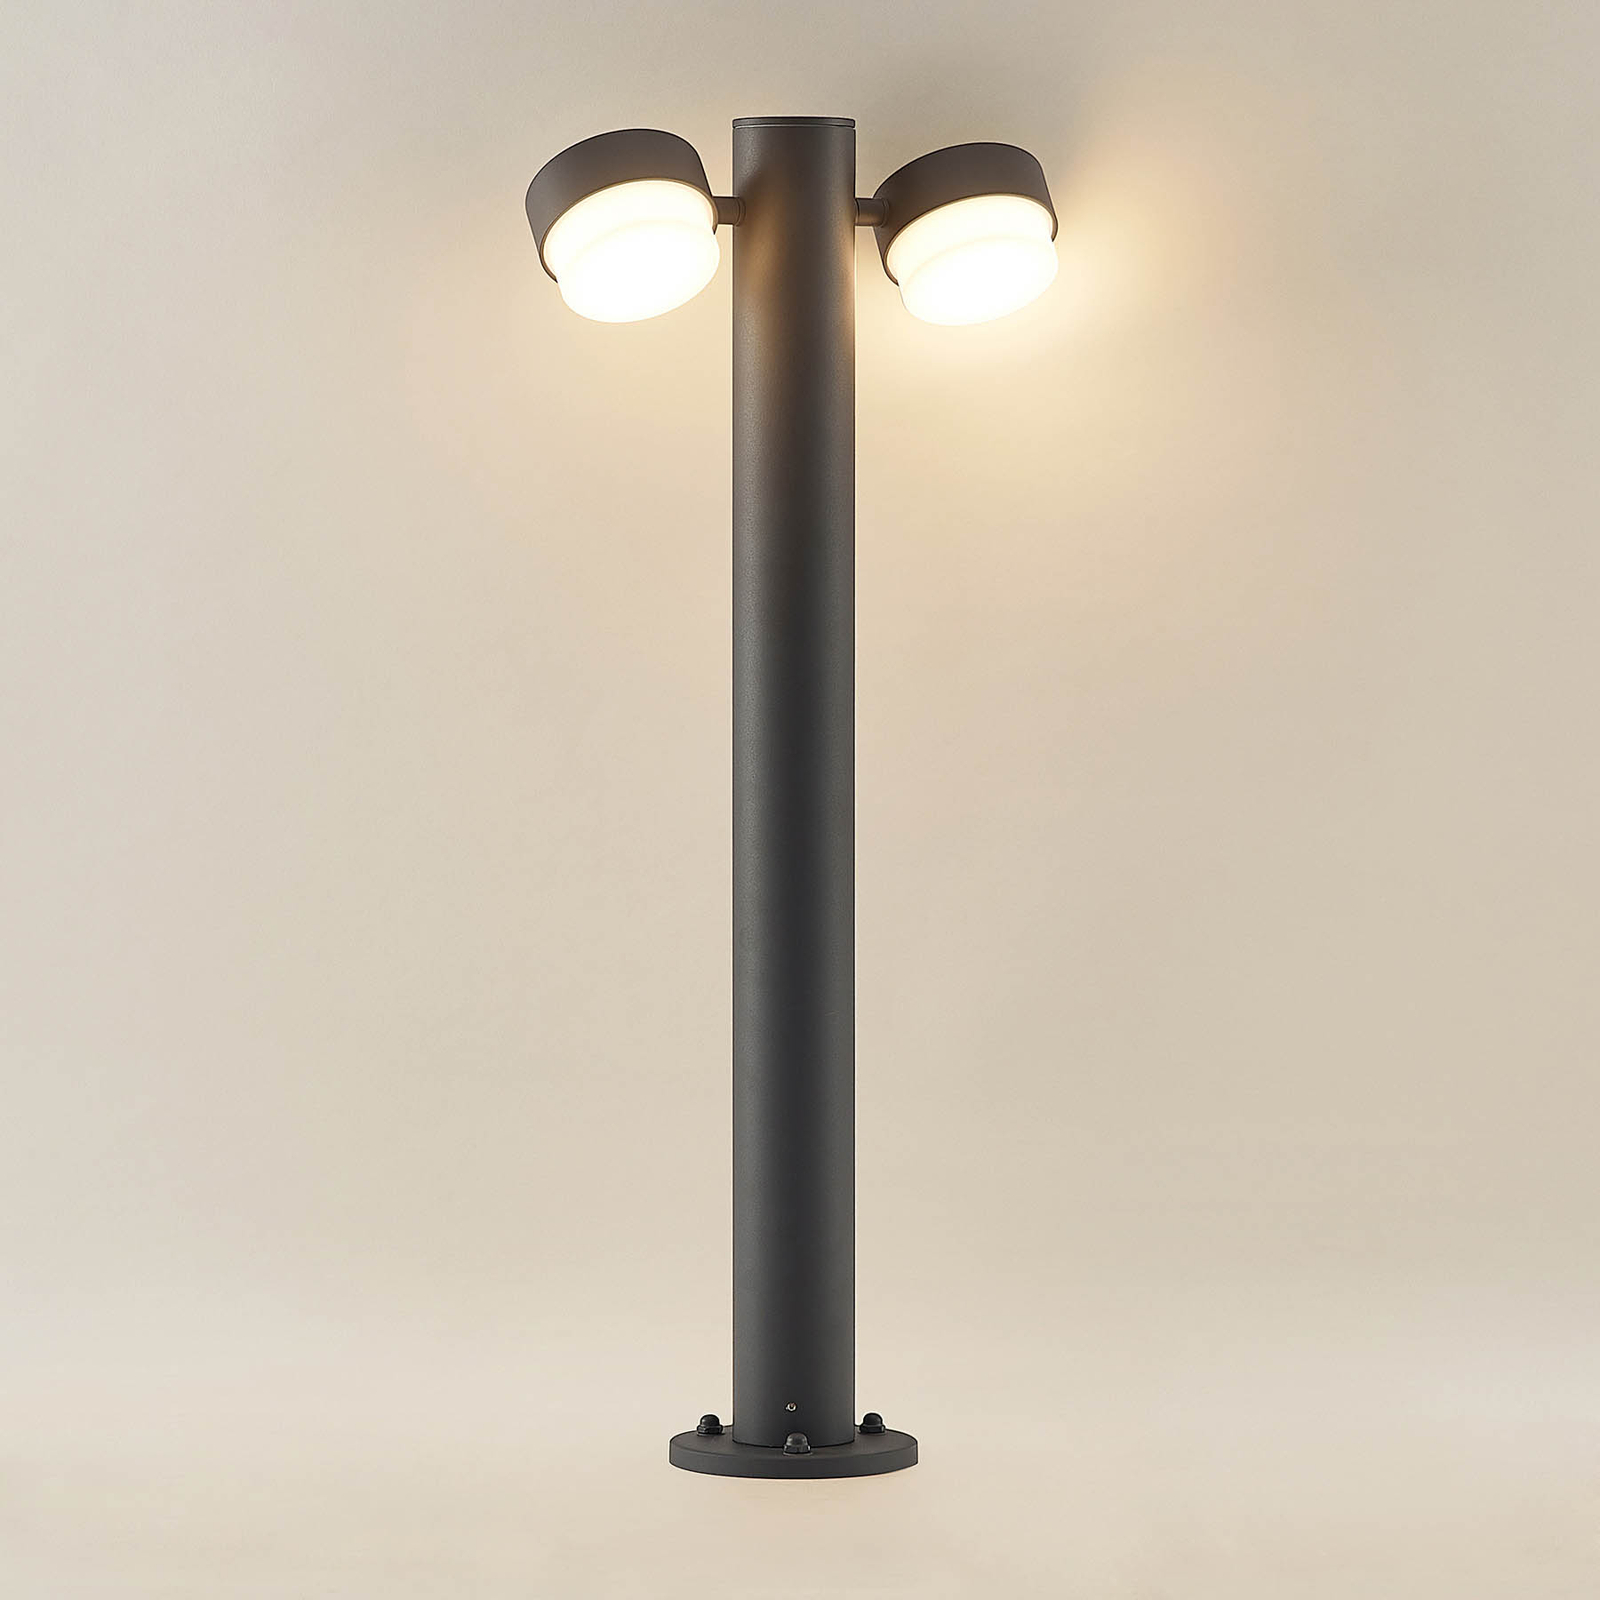 Lucande Marvella pullertlampe, 2 lyskilder, 75 cm